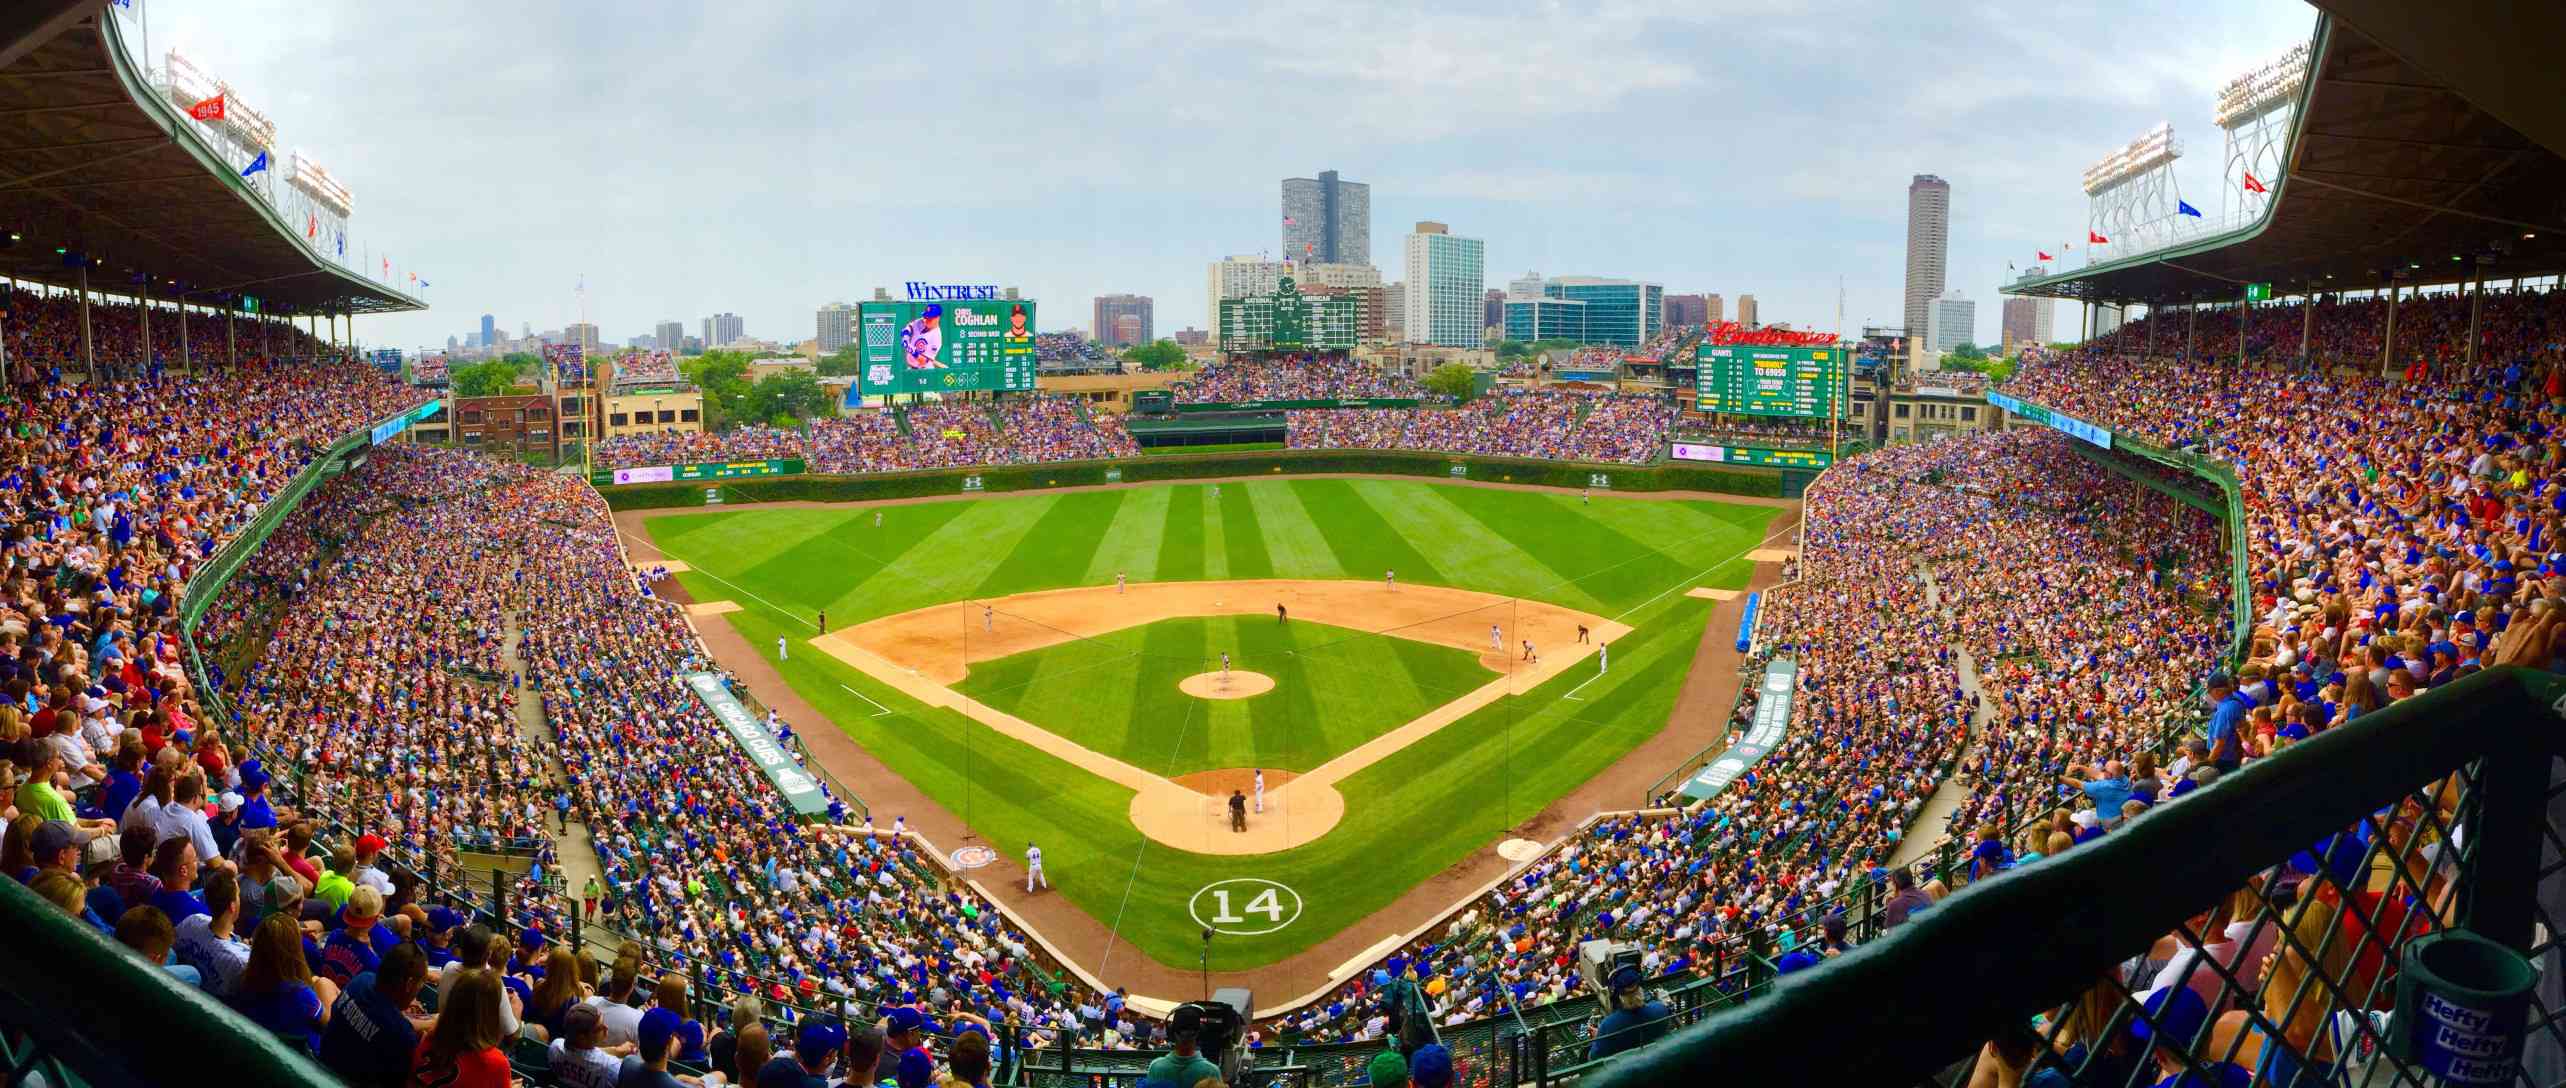 Pohled na baseballový stadion zachycený objektivem rybího oka.